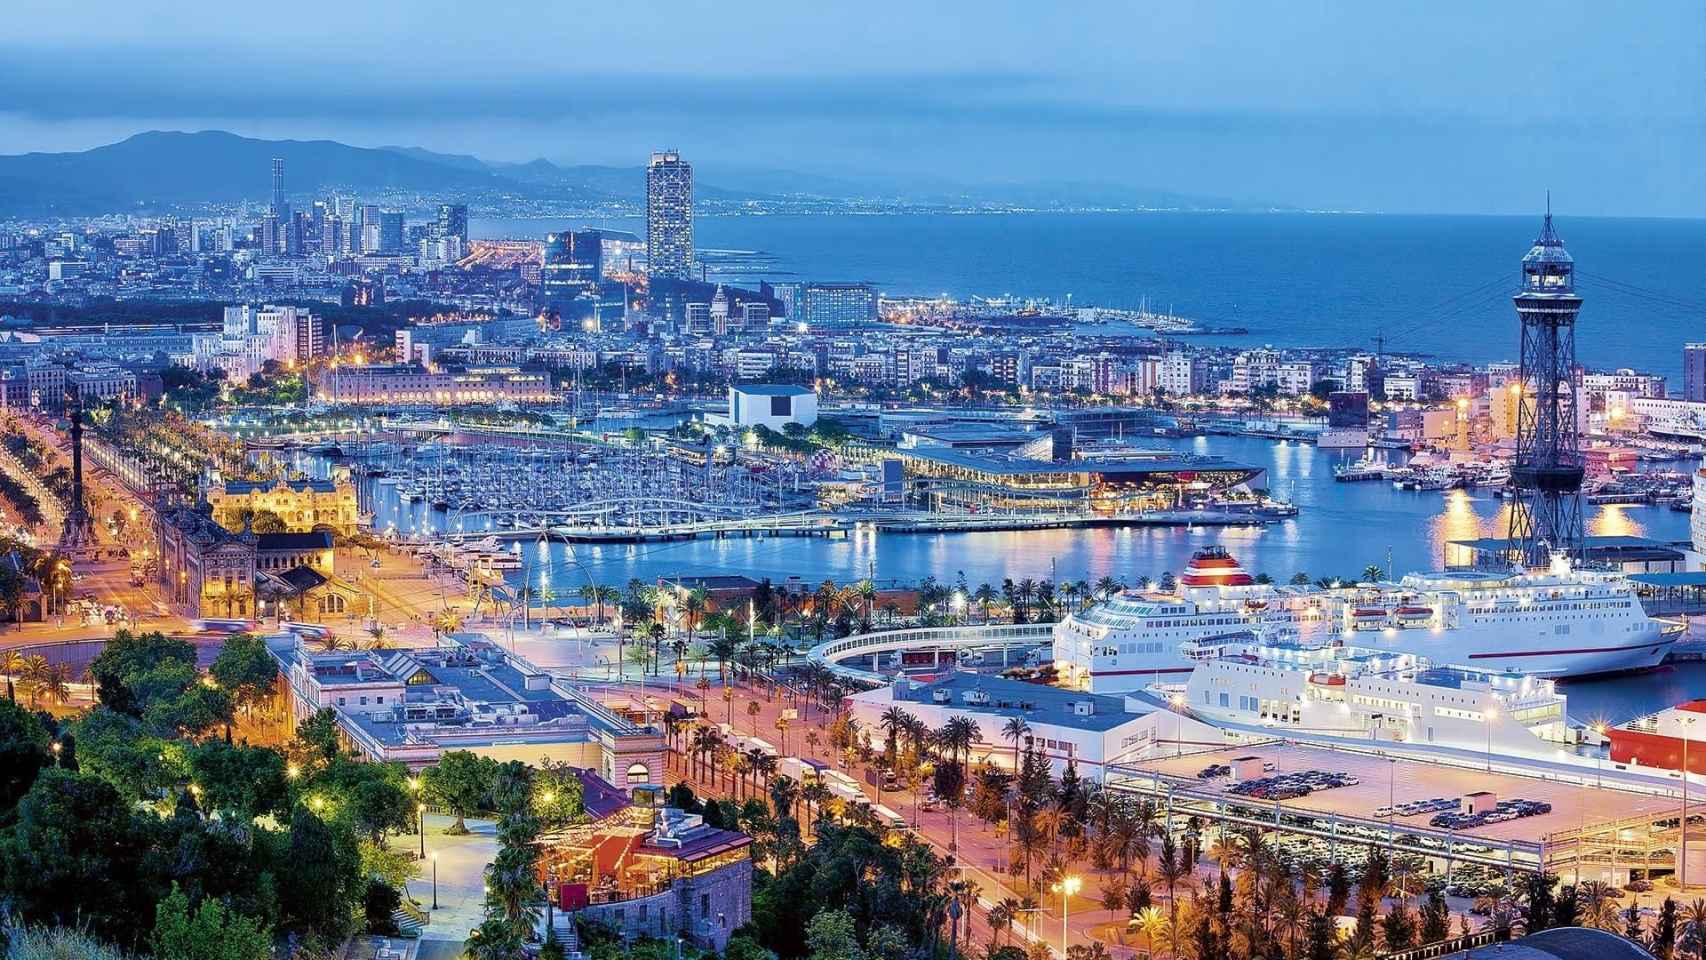 Vista panorámica del puerto olímpico de Barcelona